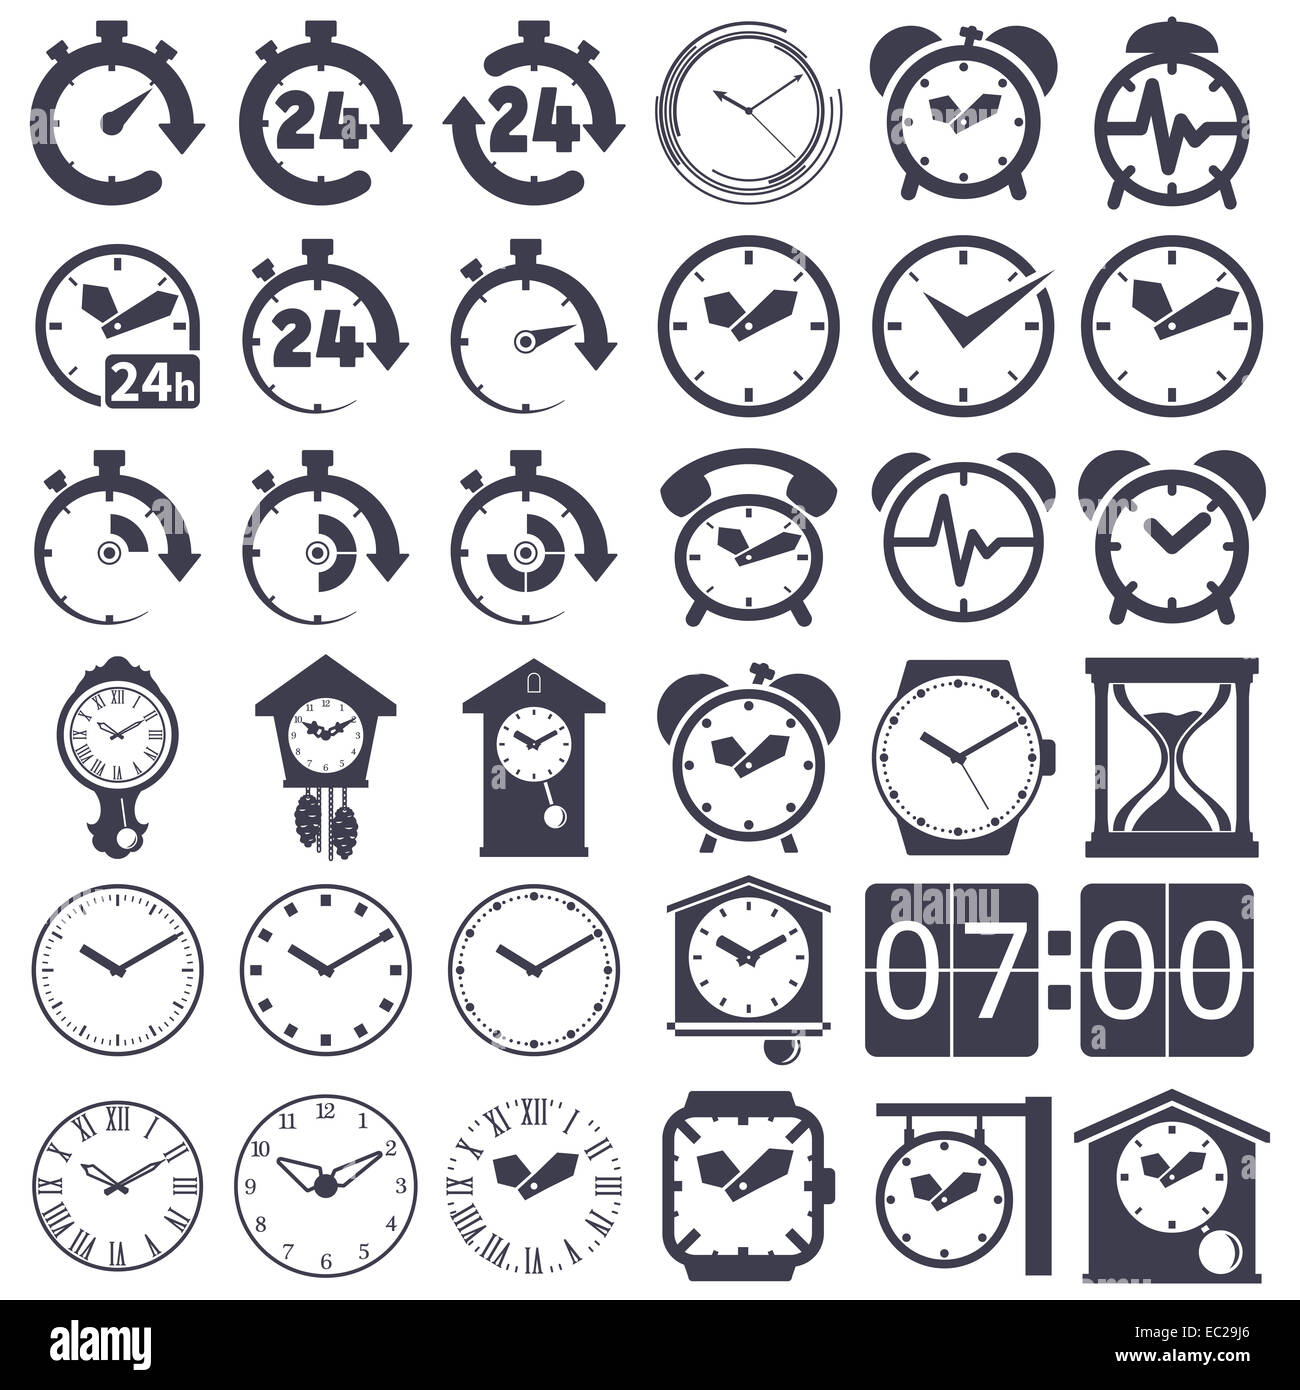 Set of icons of  clocks on white background Stock Photo